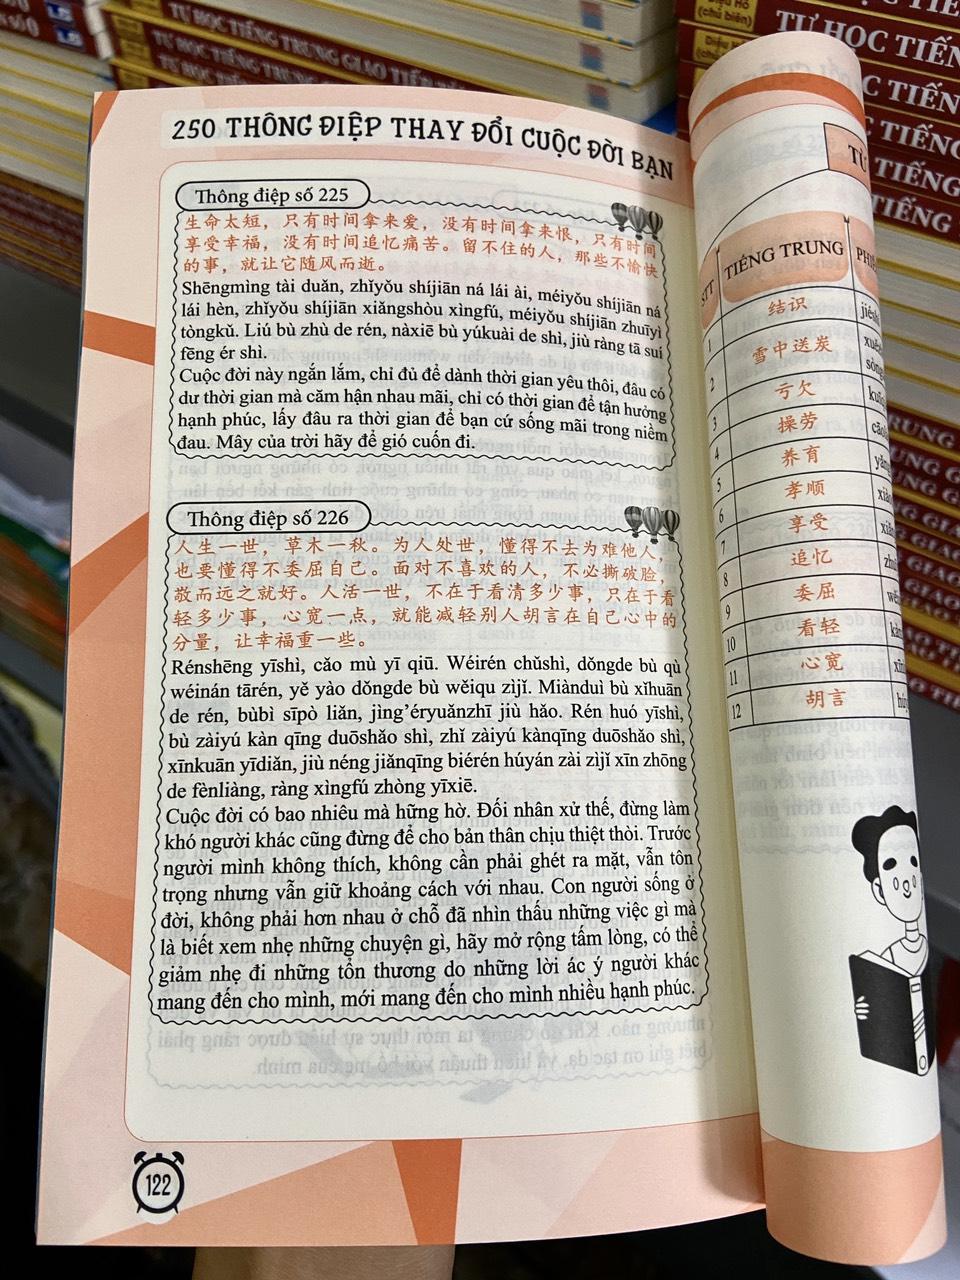 Combo 2 sách: 1500 Câu chém gió tiếng Trung thông dụng nhất + 250 Thông Điệp Thay Đổi Cuộc Đời Bạn - Song Ngữ Trung Việt (Tiếng Trung giản thể, bính âm Pinyin, nghĩa tiếng Việt, DVD tài liệu đi kèm)